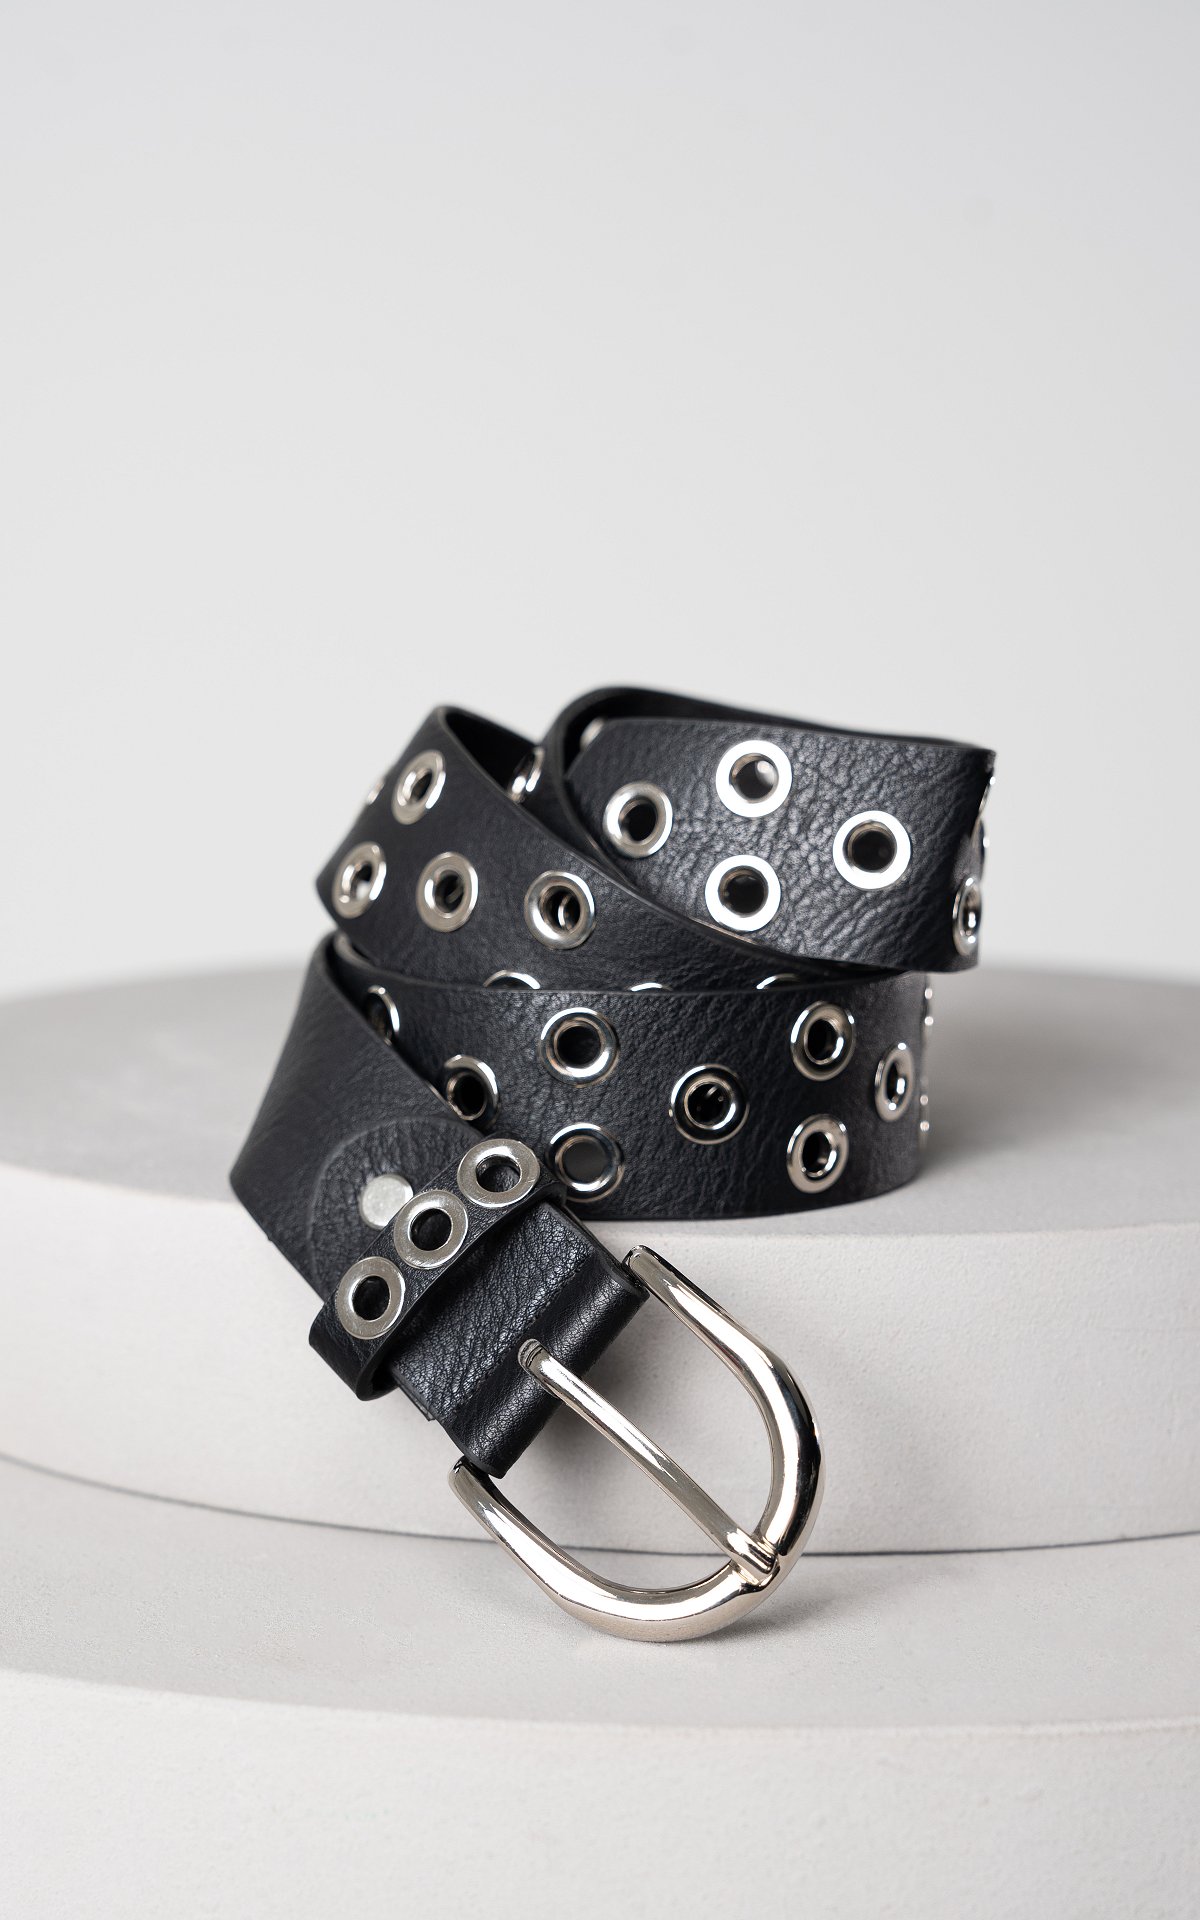 ondernemen in stand houden onderwerpen Riem met metalen ringen - Zwart Zilver | Guts & Gusto